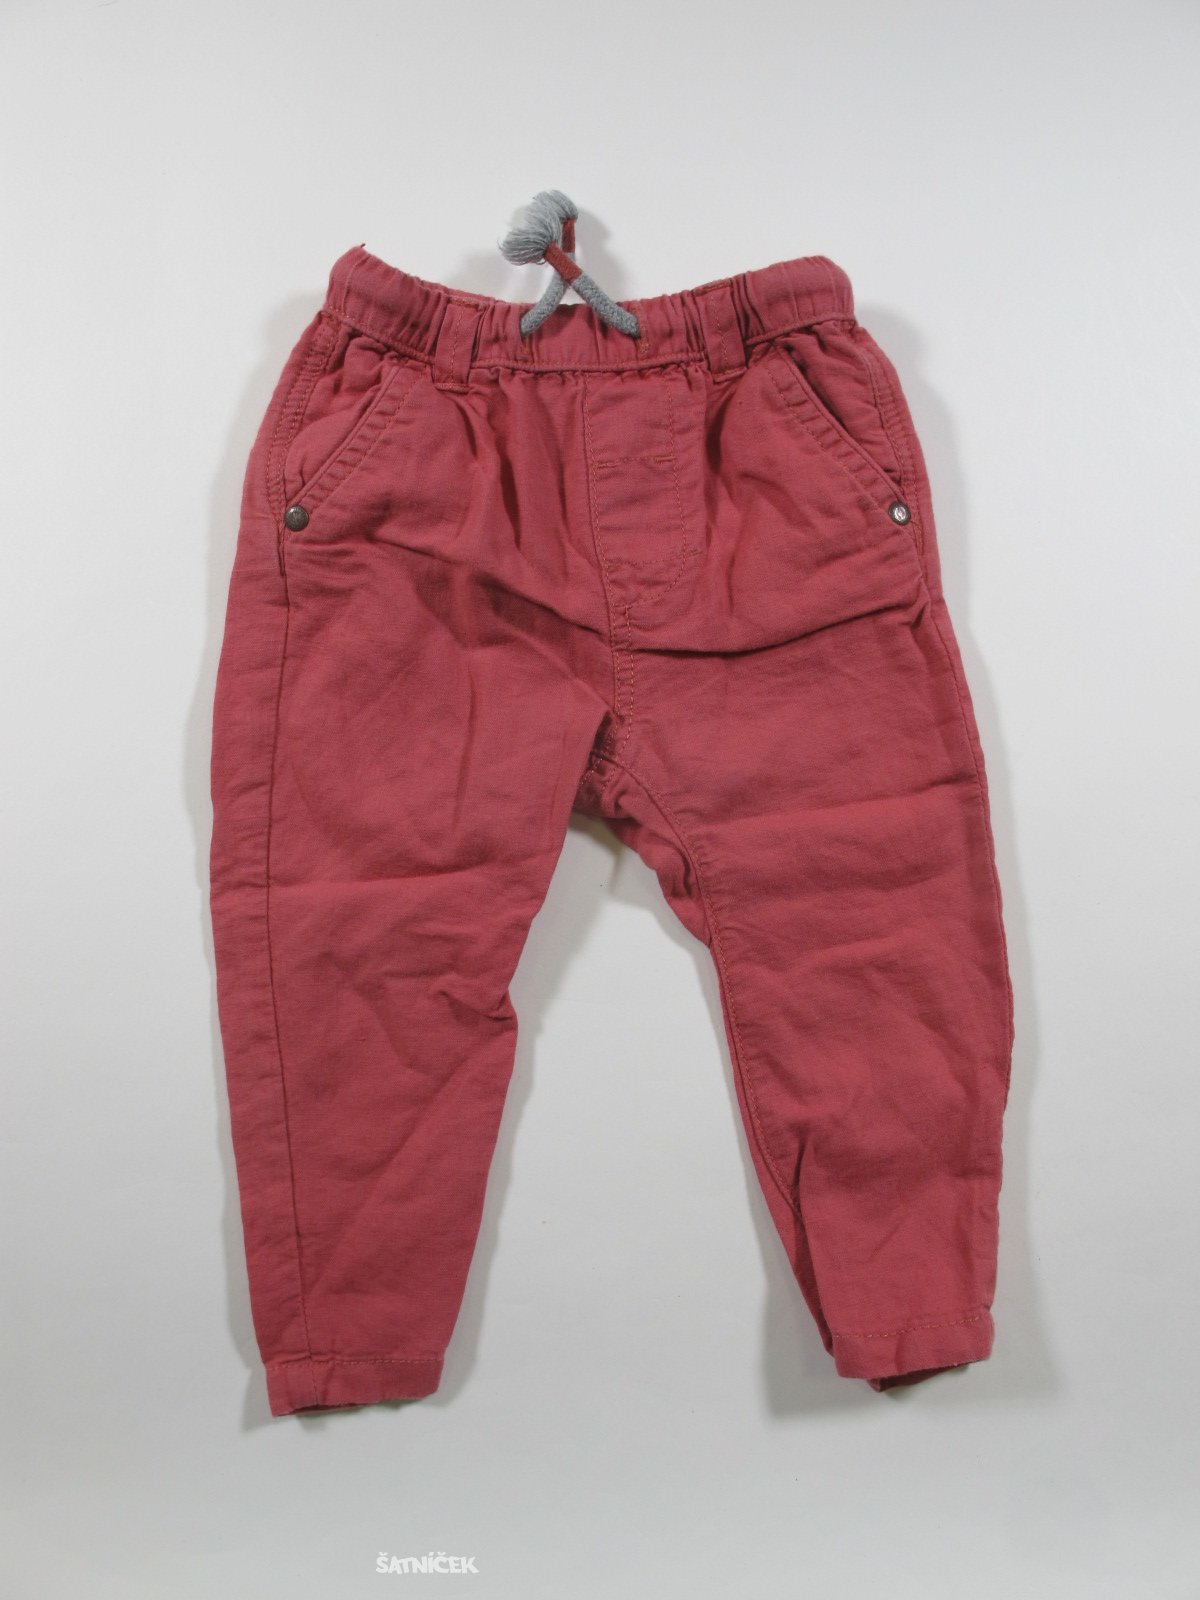 Růžové plátěné kalhoty 